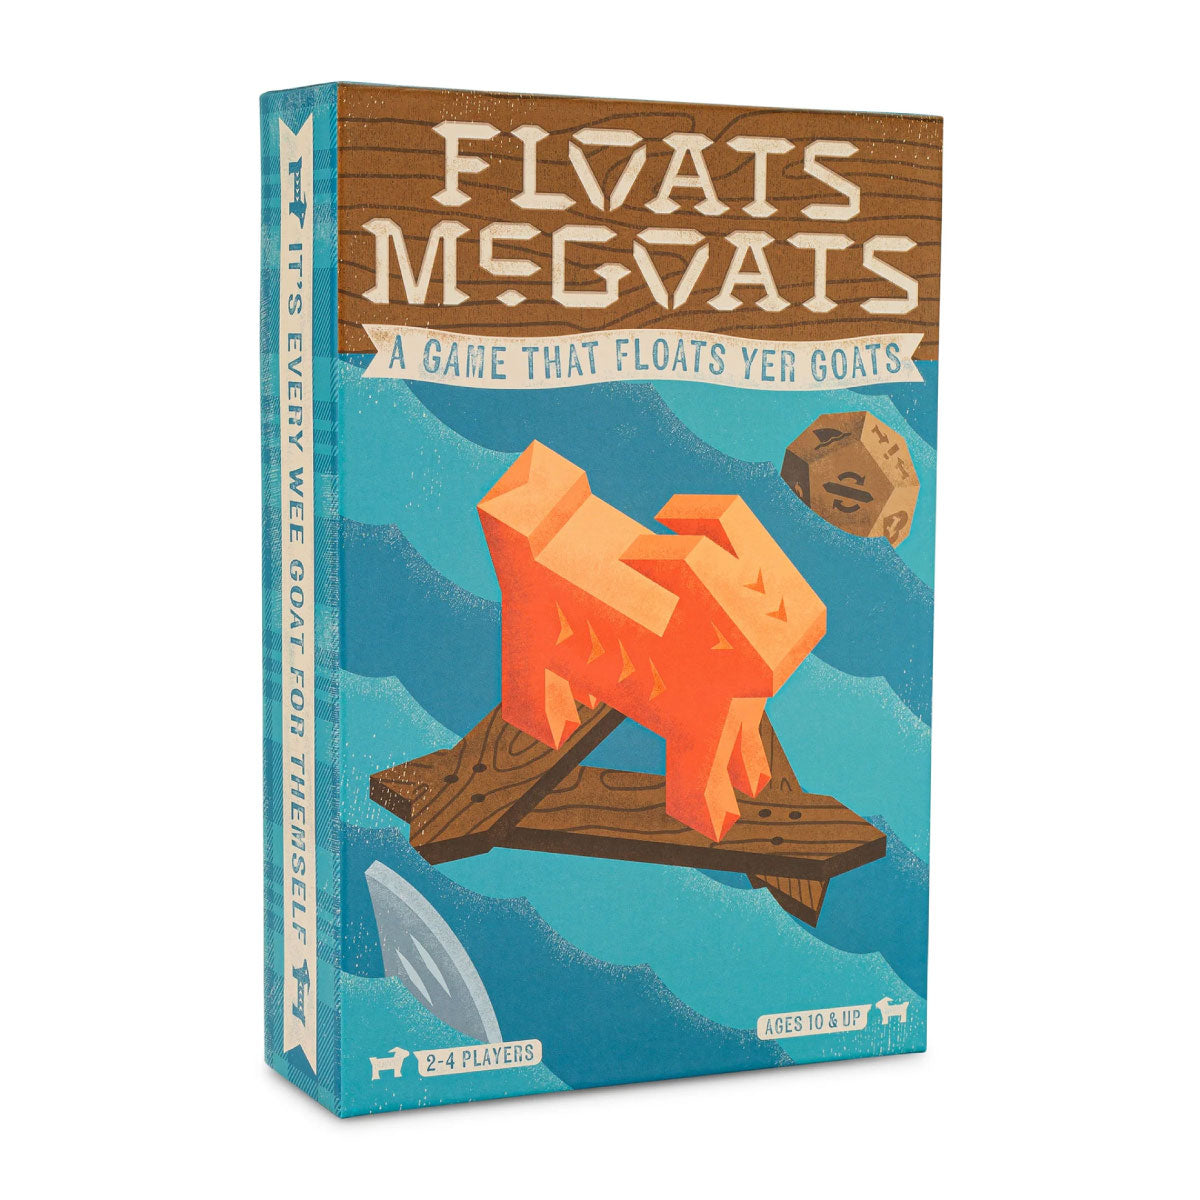 Hootenany Games Floats McGoats Strategy Game